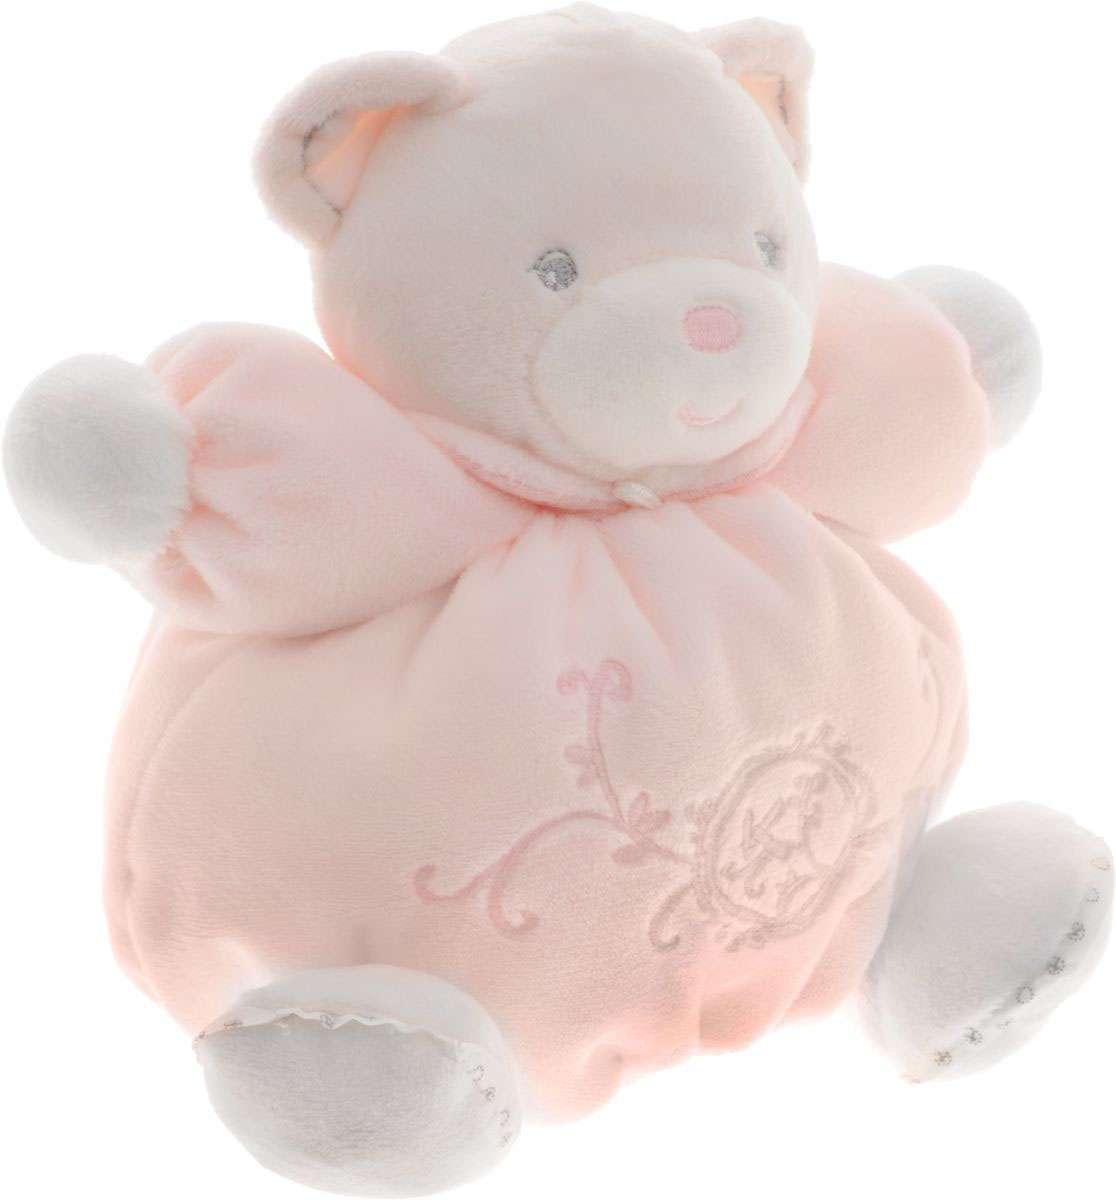 Мягкая игрушка - Жемчуг - Мишка маленький розовый, 18 см  